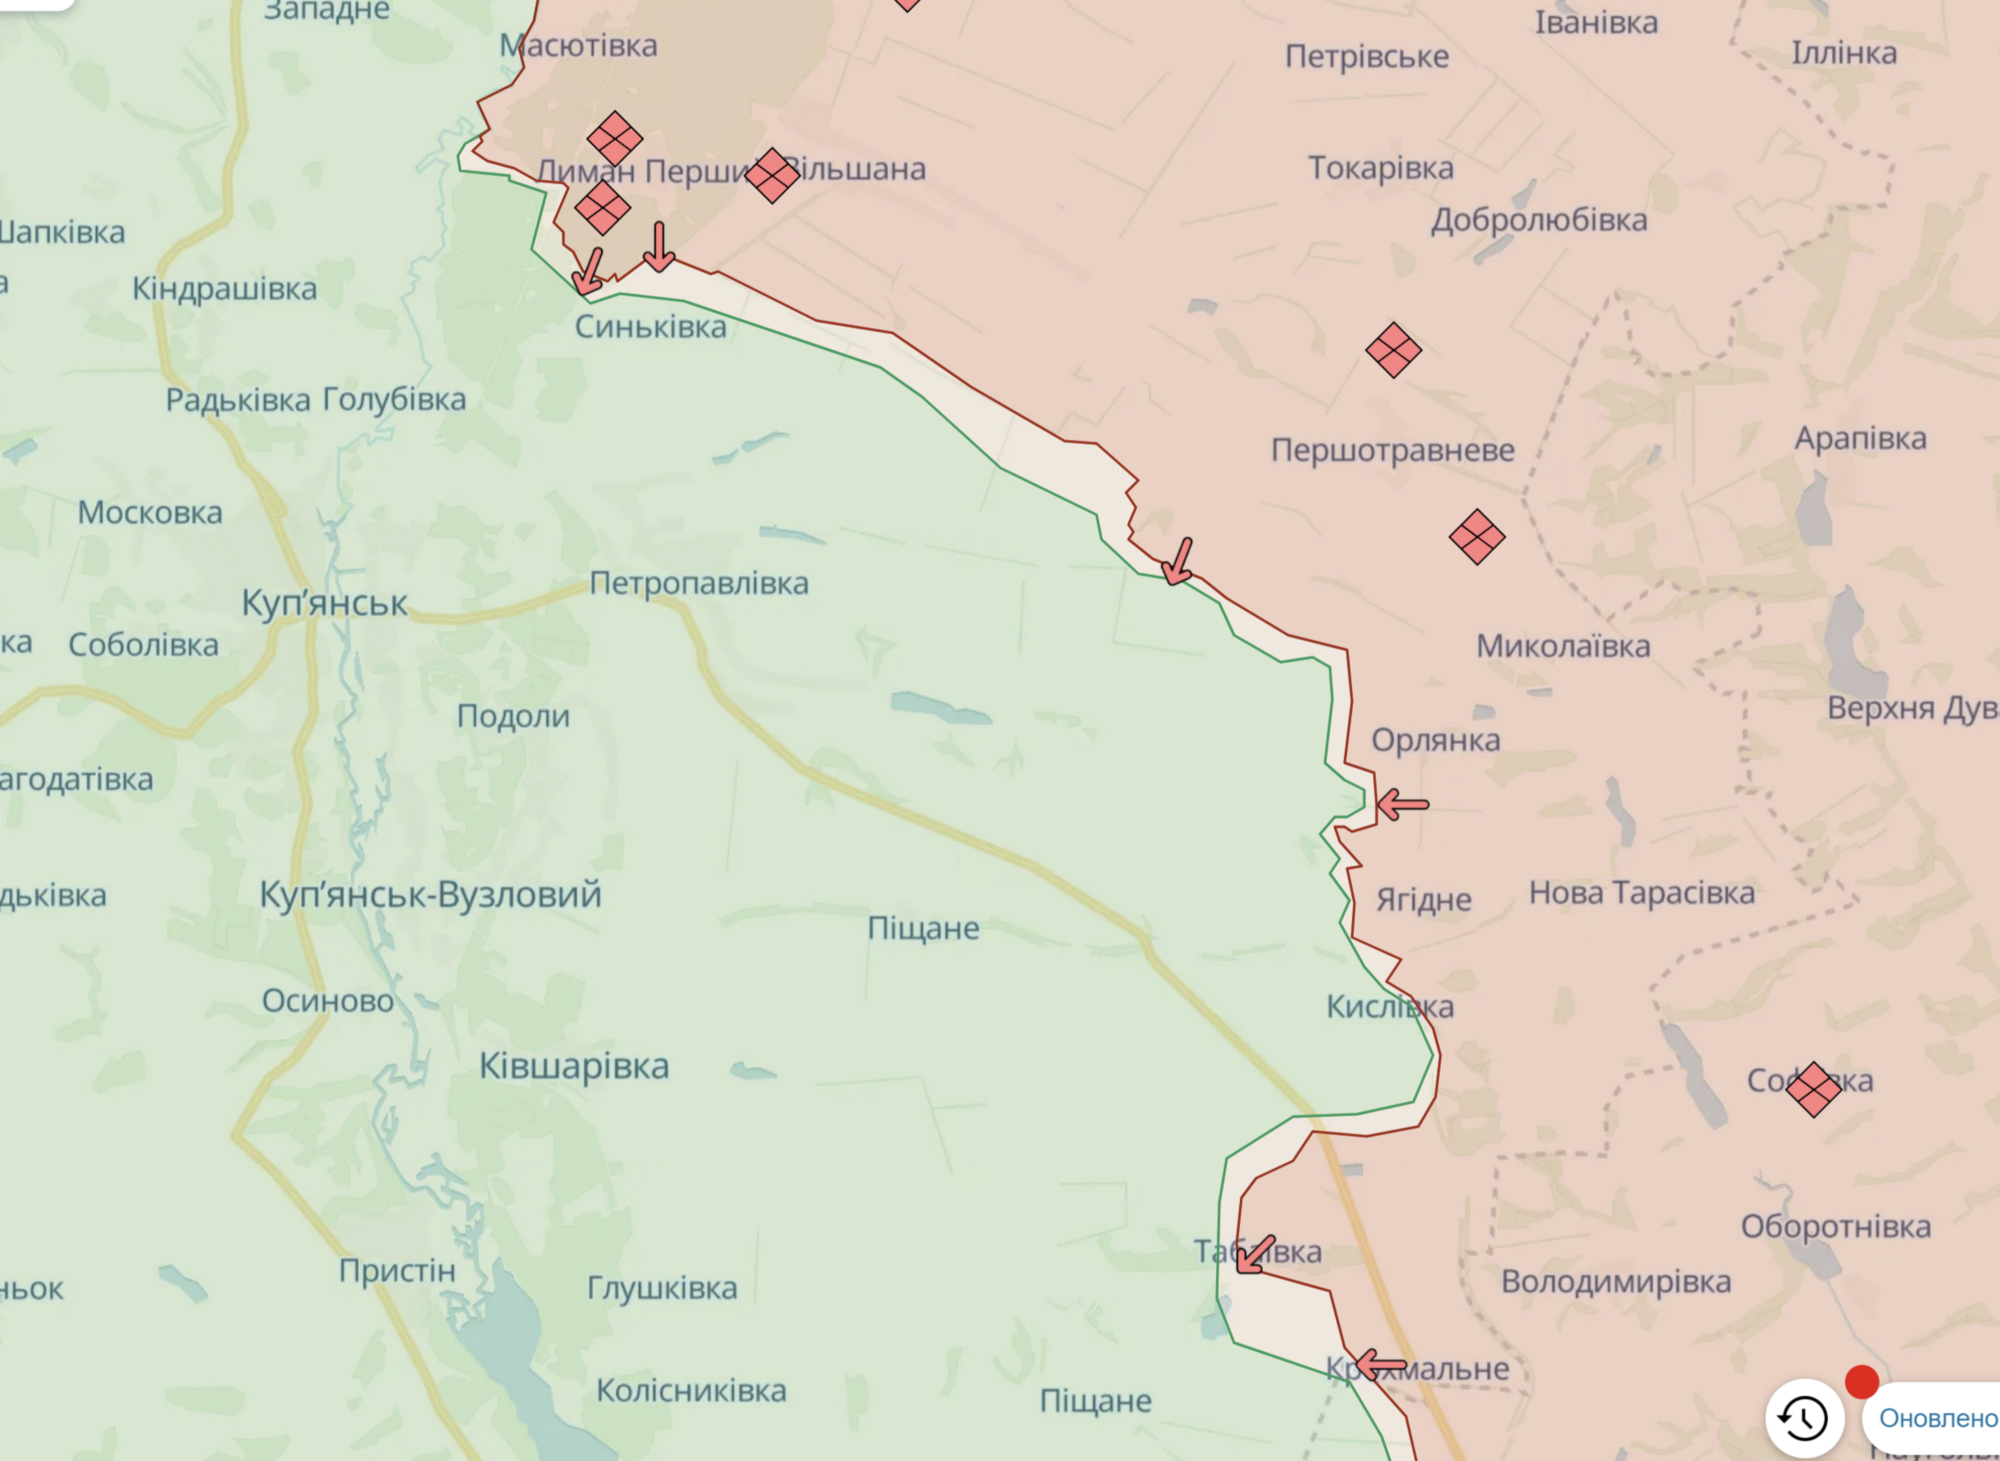 ВСУ продолжают удерживать плацдармы на левобережье Днепра: отразили четыре попытки штурма - Генштаб